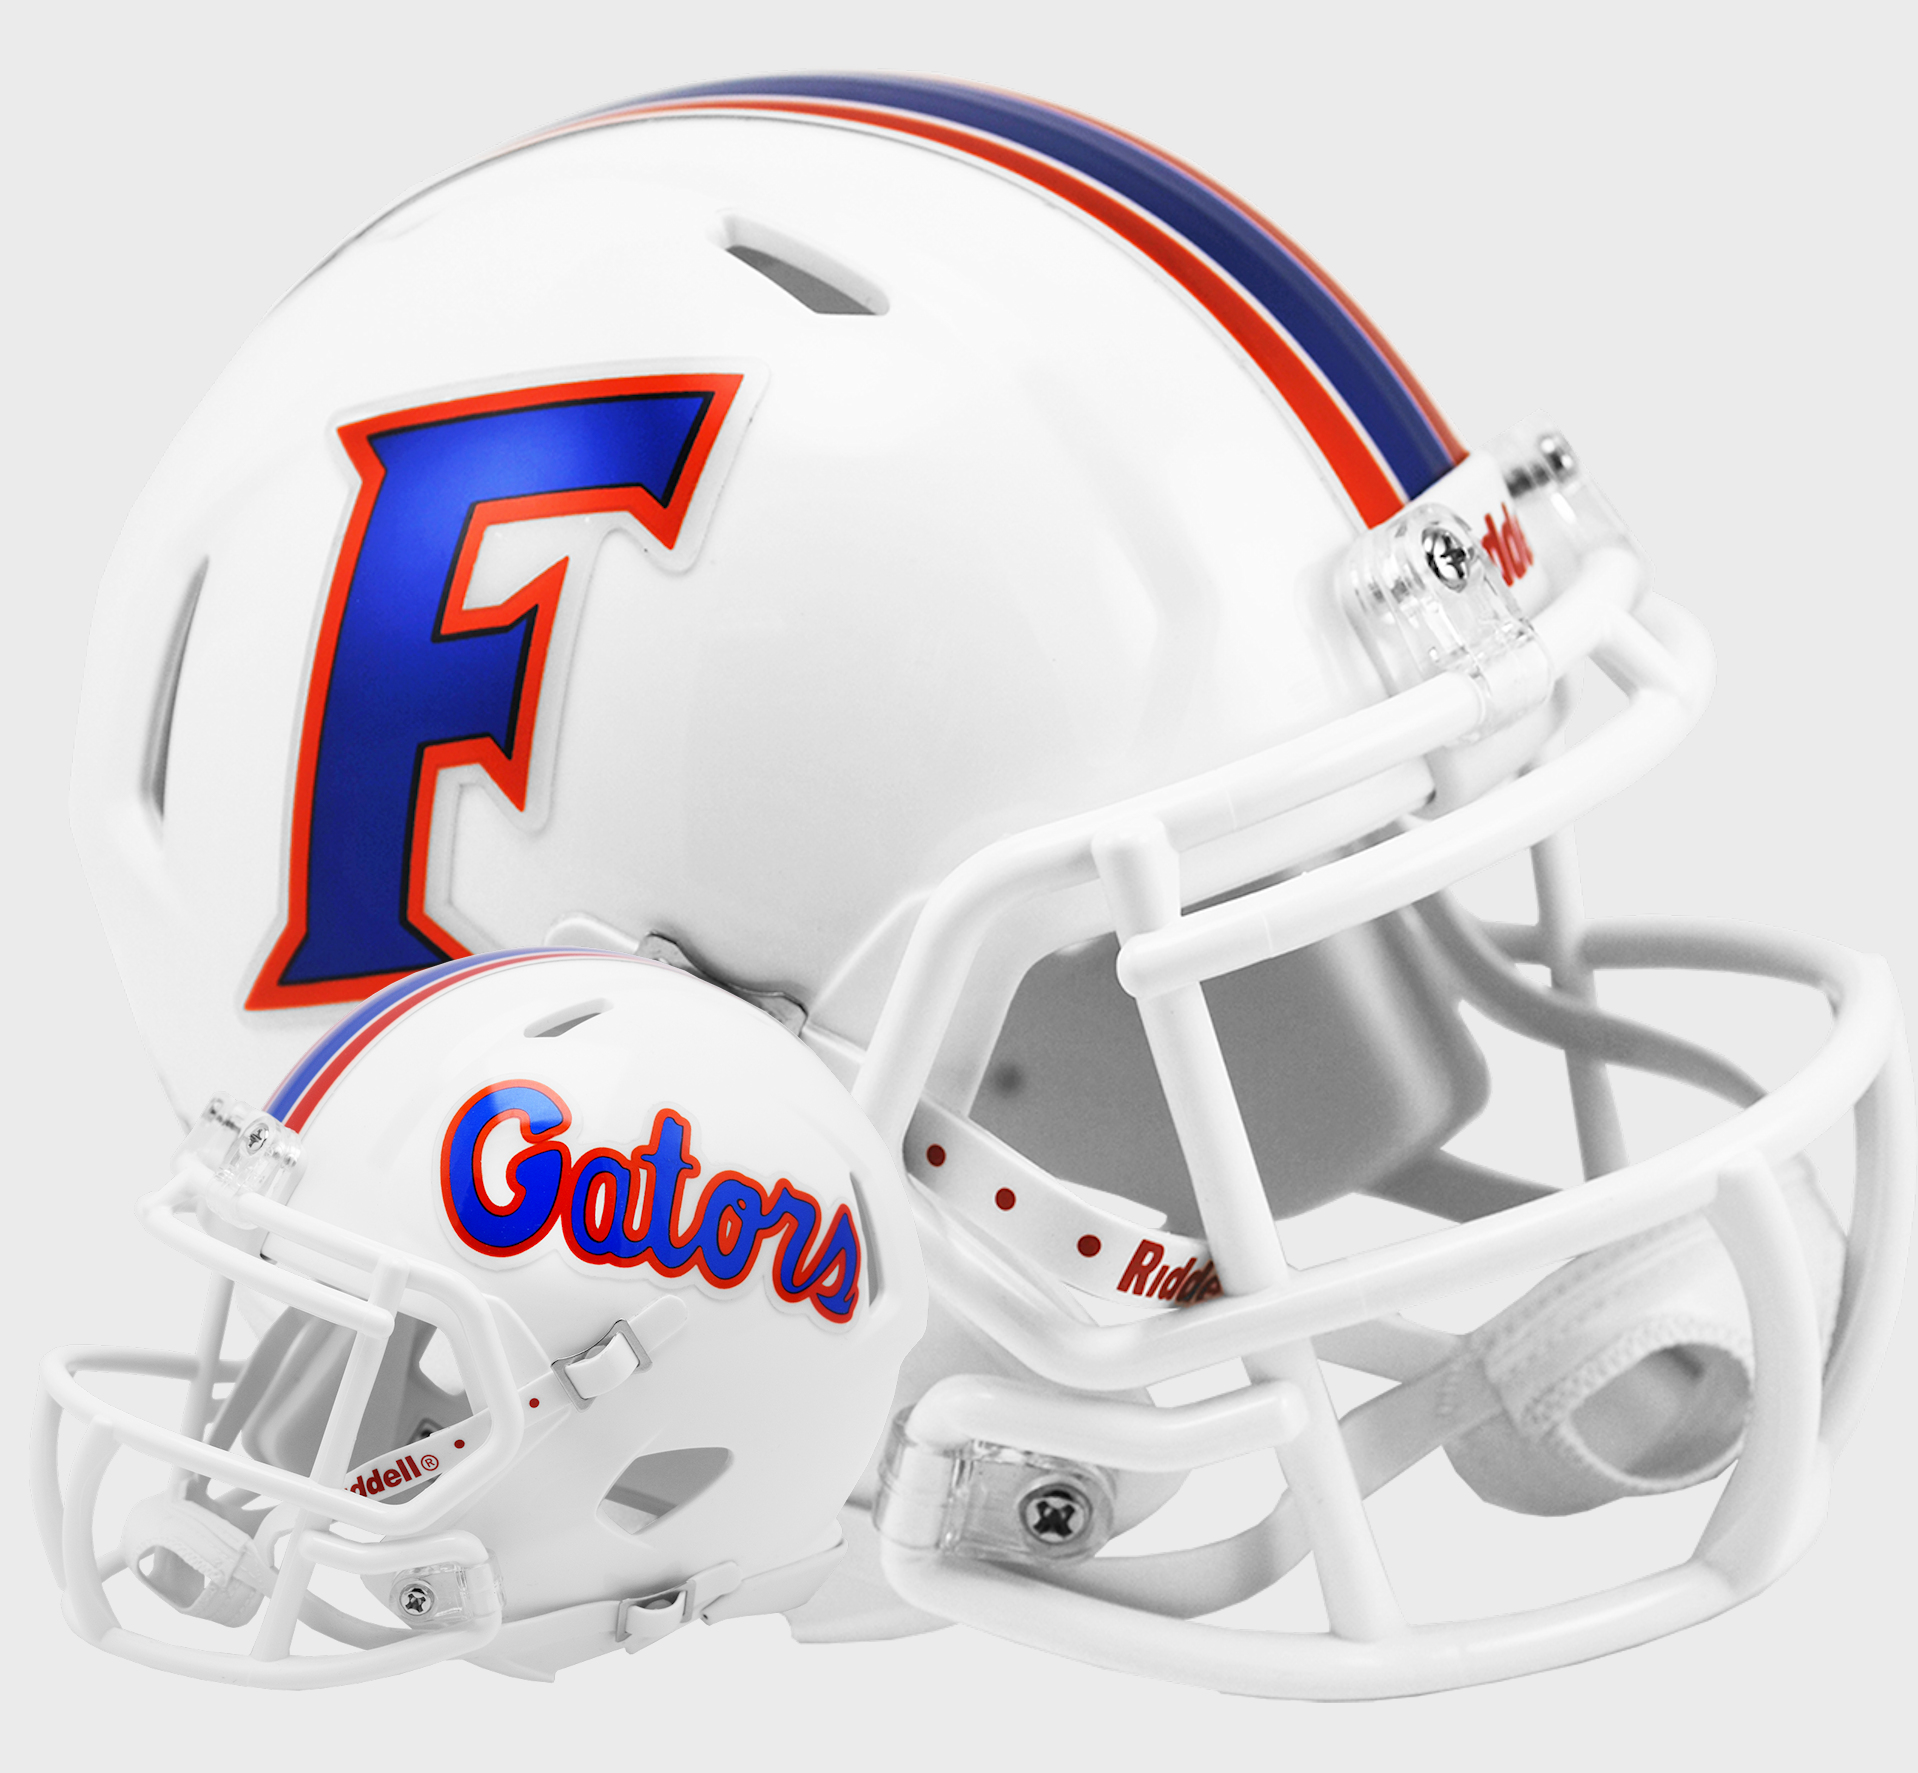 Florida Gators NCAA Mini Speed Football Helmet <B>2015 White</B>